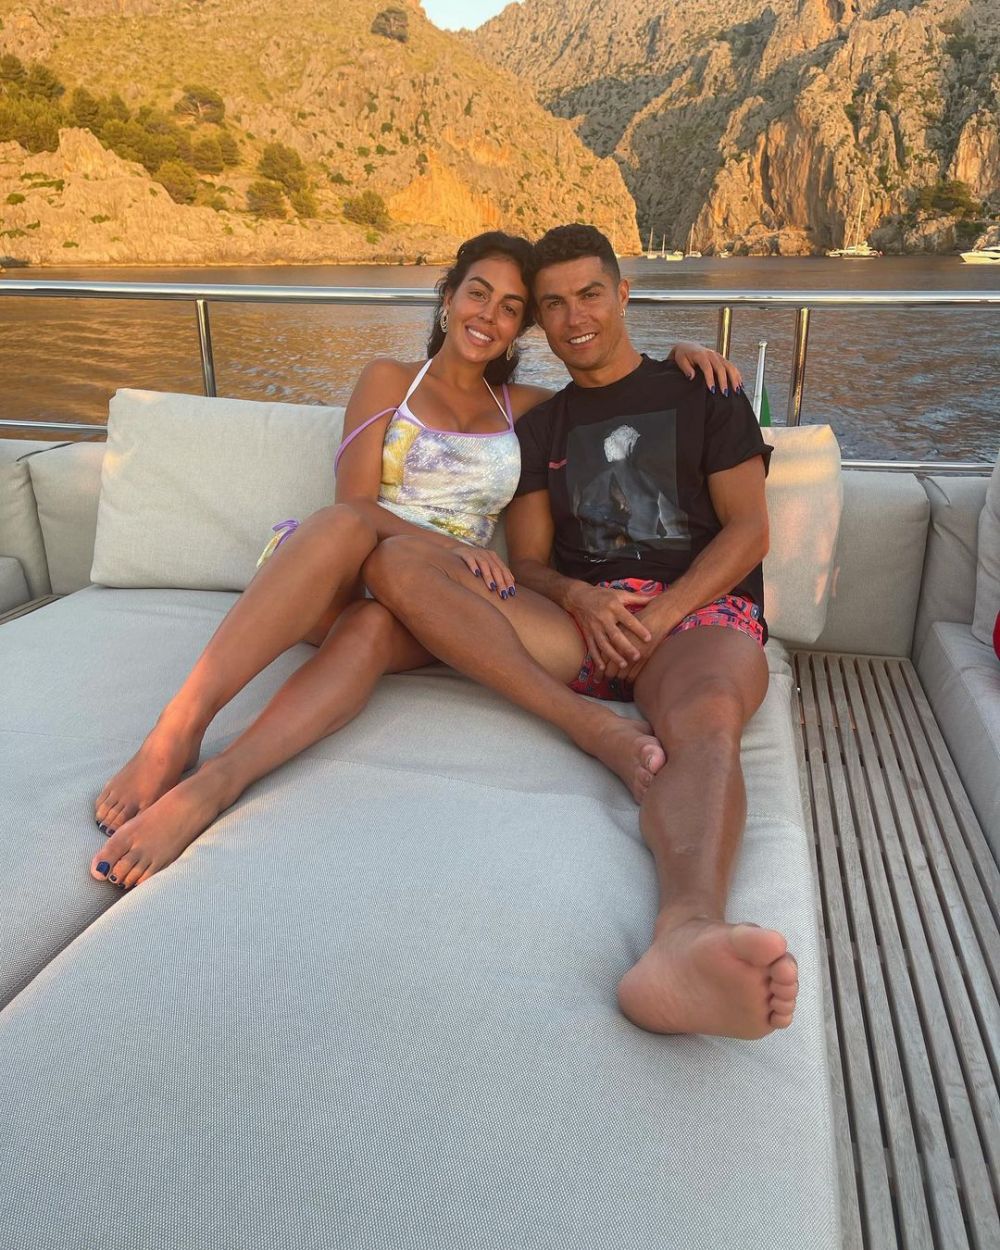 Imaginea de milioane de like-uri cu Cristiano Ronaldo și fiica lor cea mică postată de Georgina Rodriguez pe internet: "Îi iubesc"_19